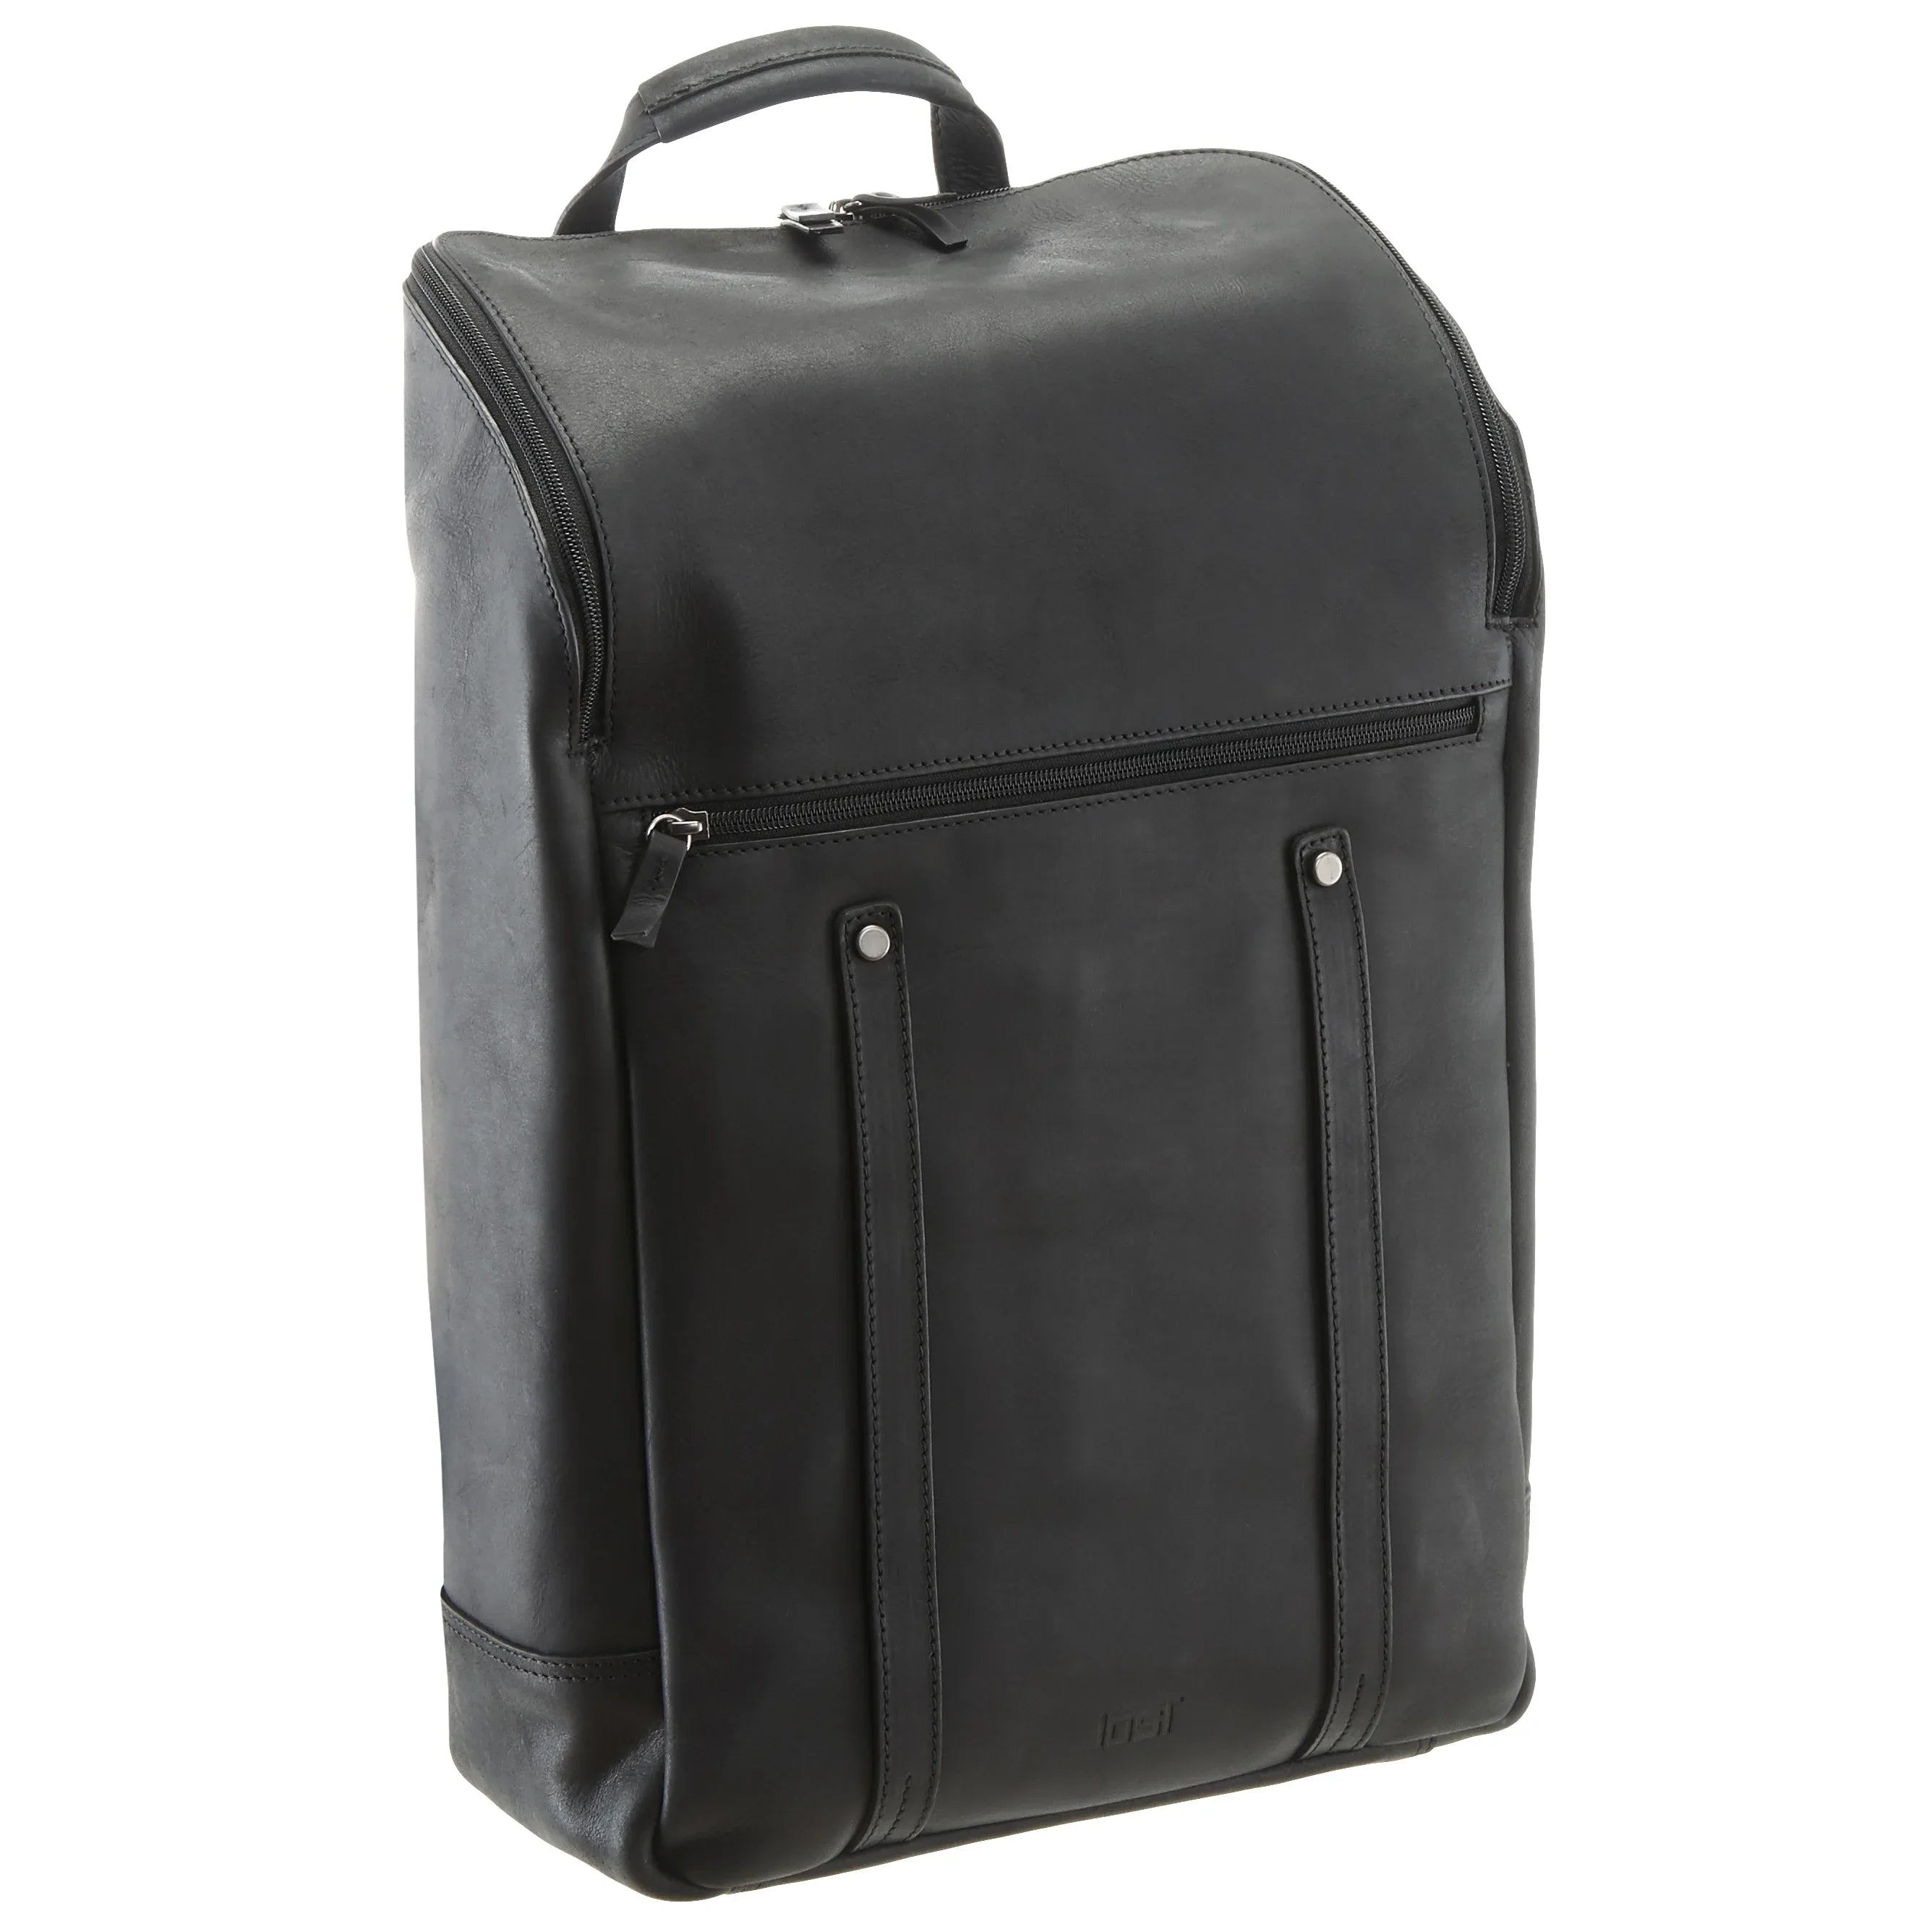 Jost Salo sac à dos pour ordinateur portable 45 cm - noir